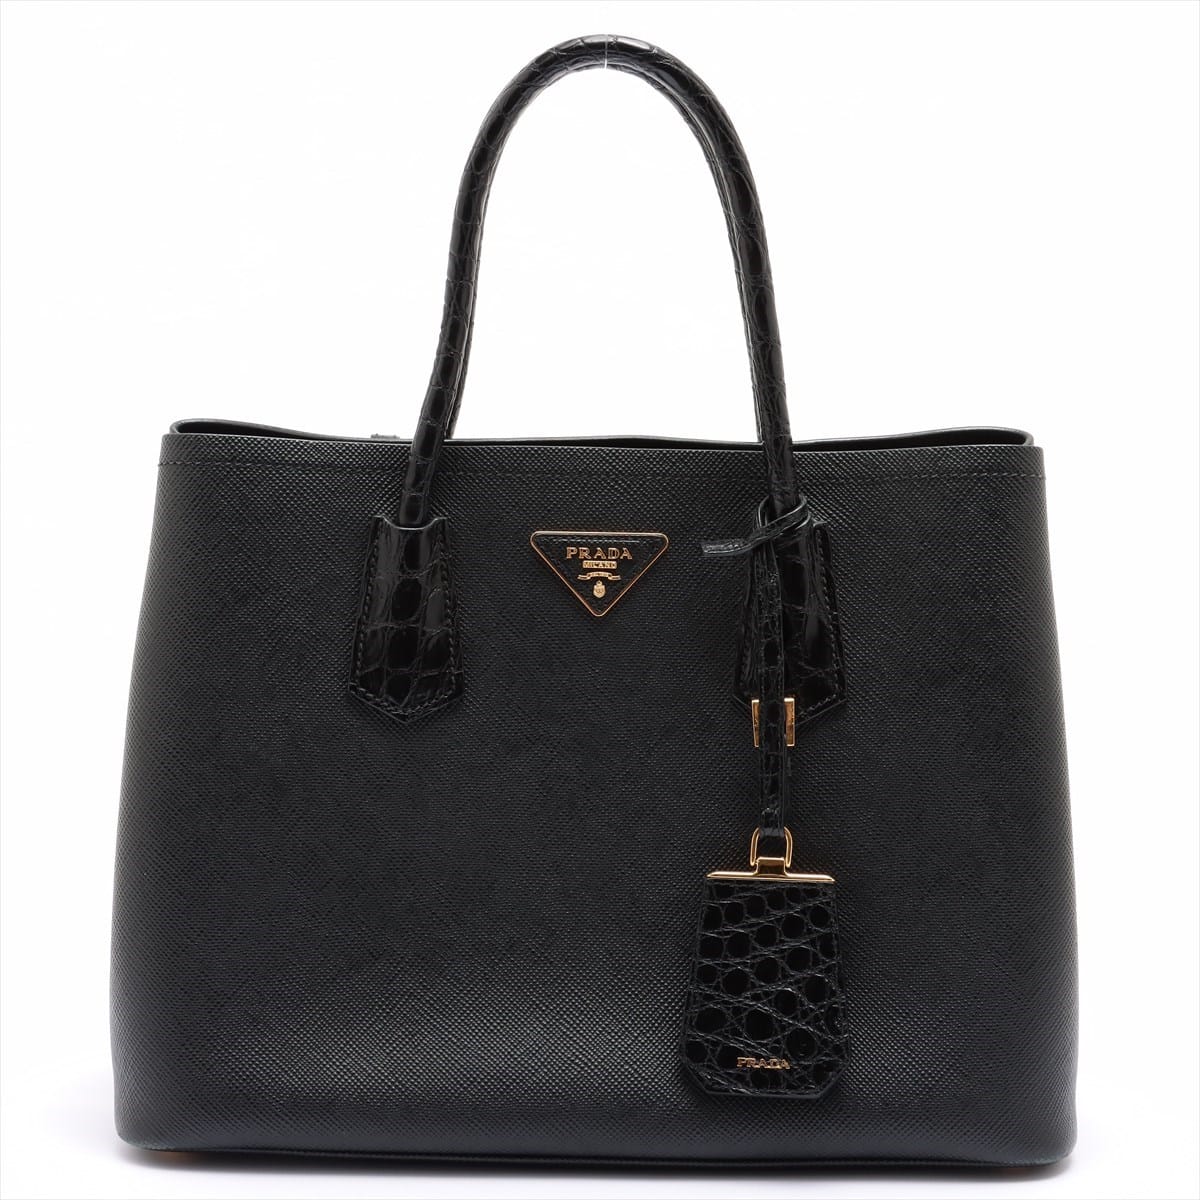 Prada Saffiano Cuir Leather Hand bag Black